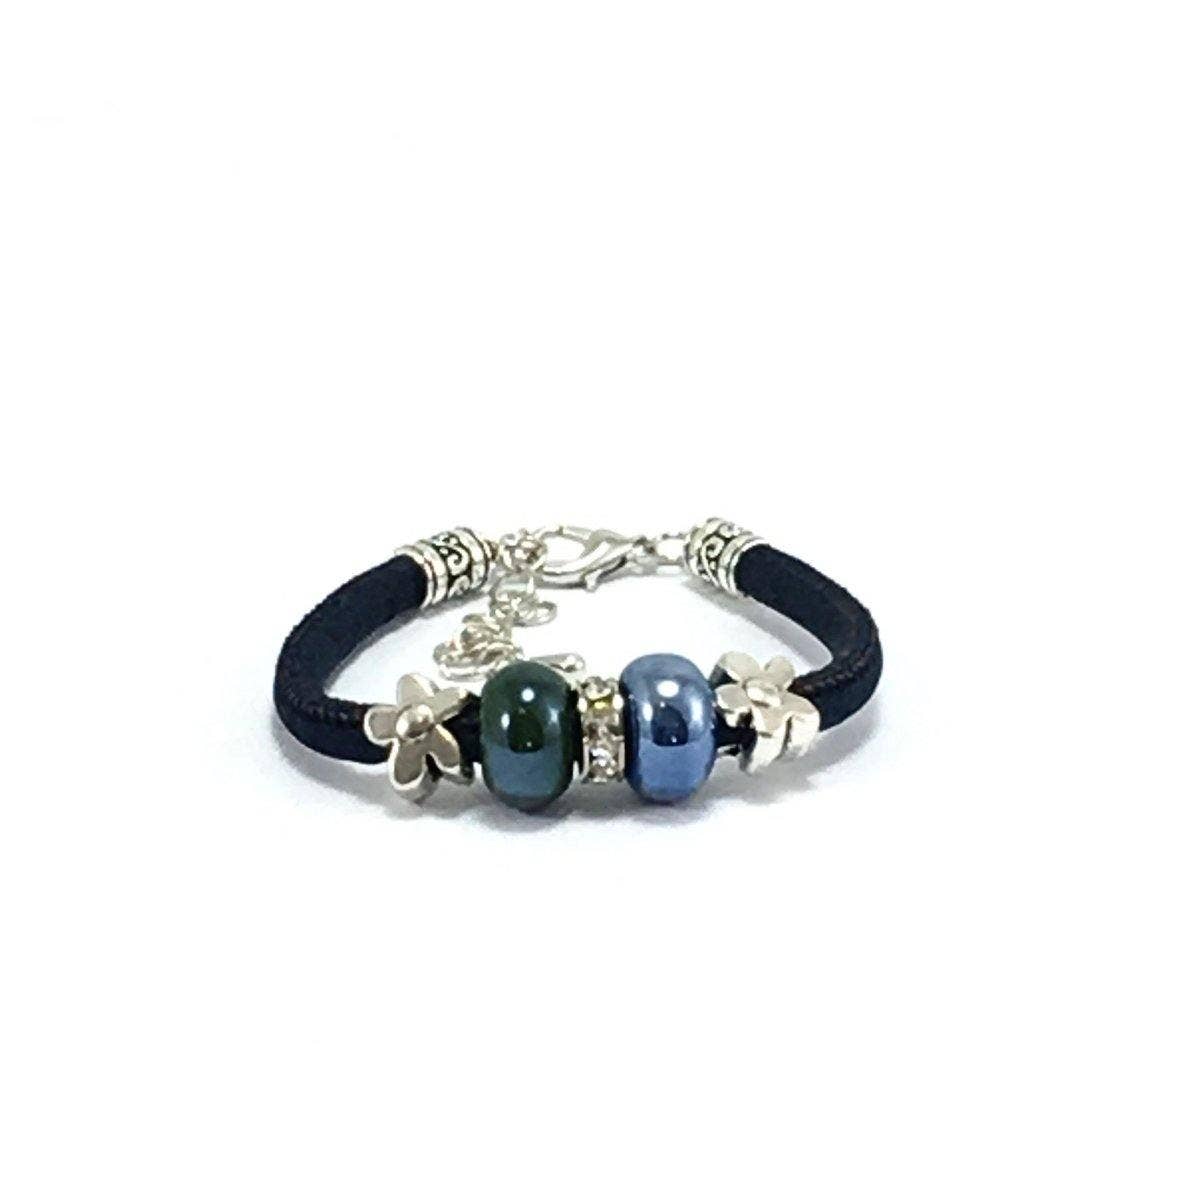 Korkarmband in Marineblau mit marmorblauen Steinen